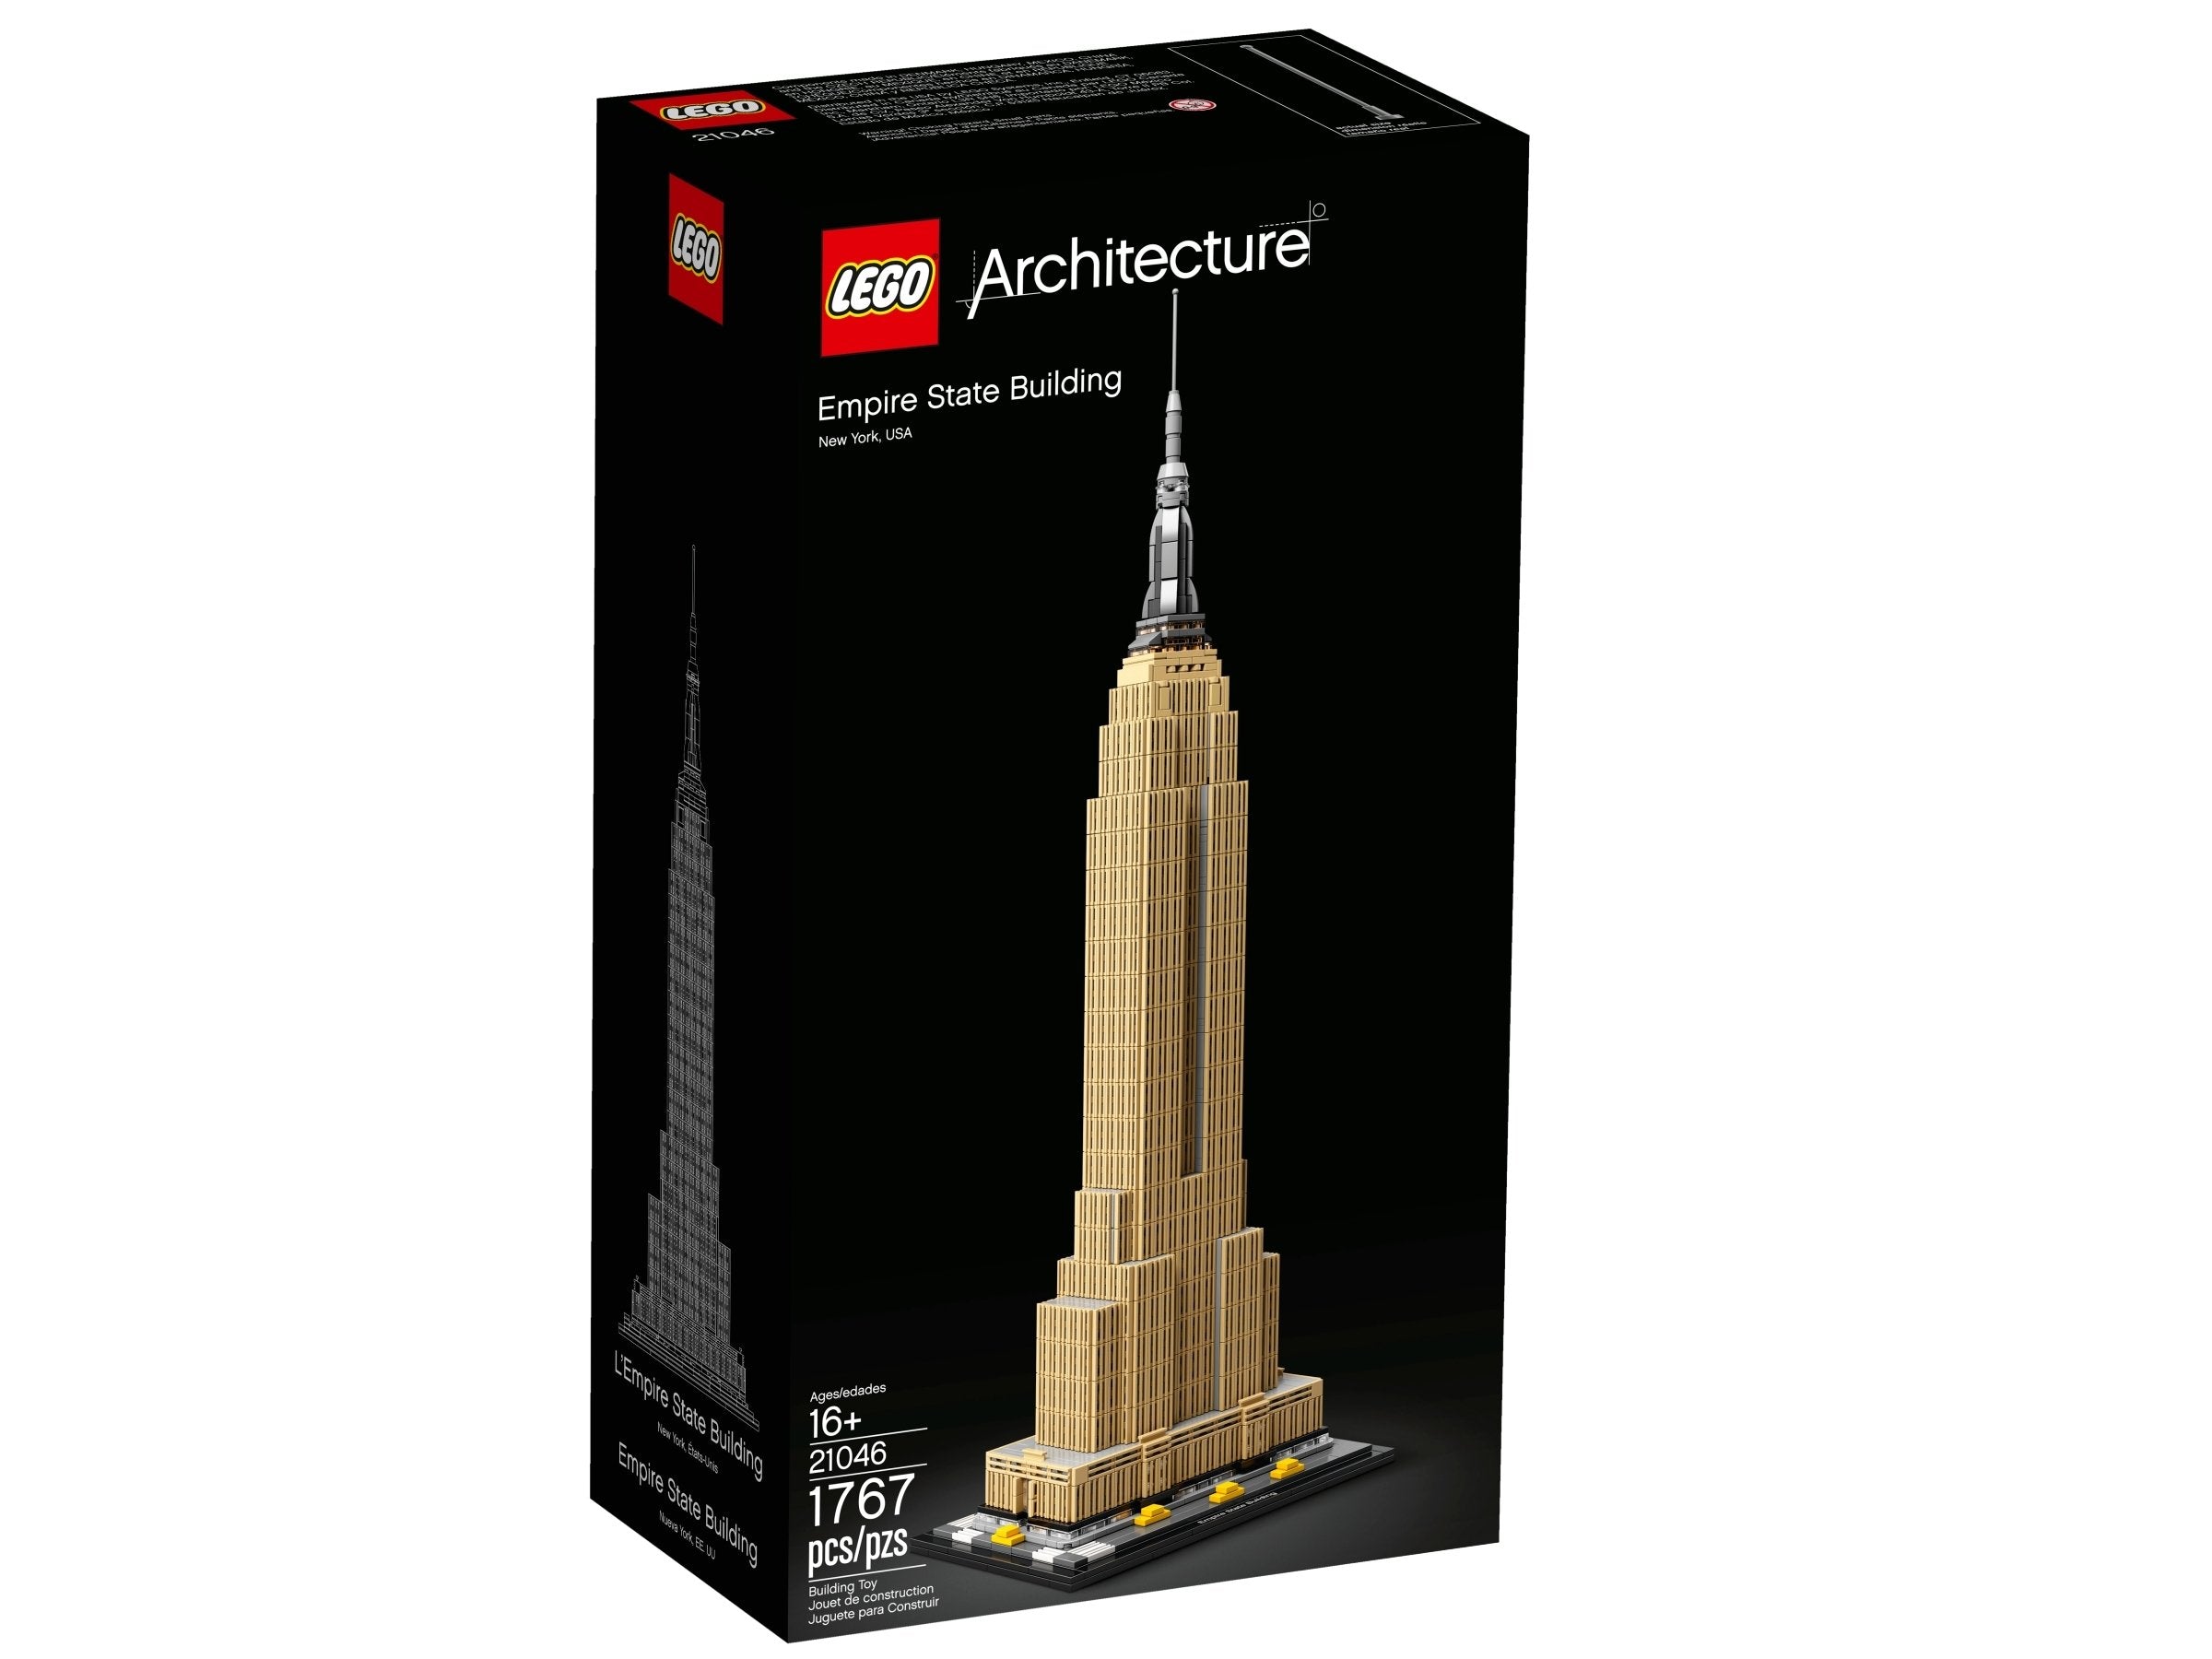 LEGO Architecture Empire State Building (21046) - im GOLDSTIEN.SHOP verfügbar mit Gratisversand ab Schweizer Lager! (5702016368338)